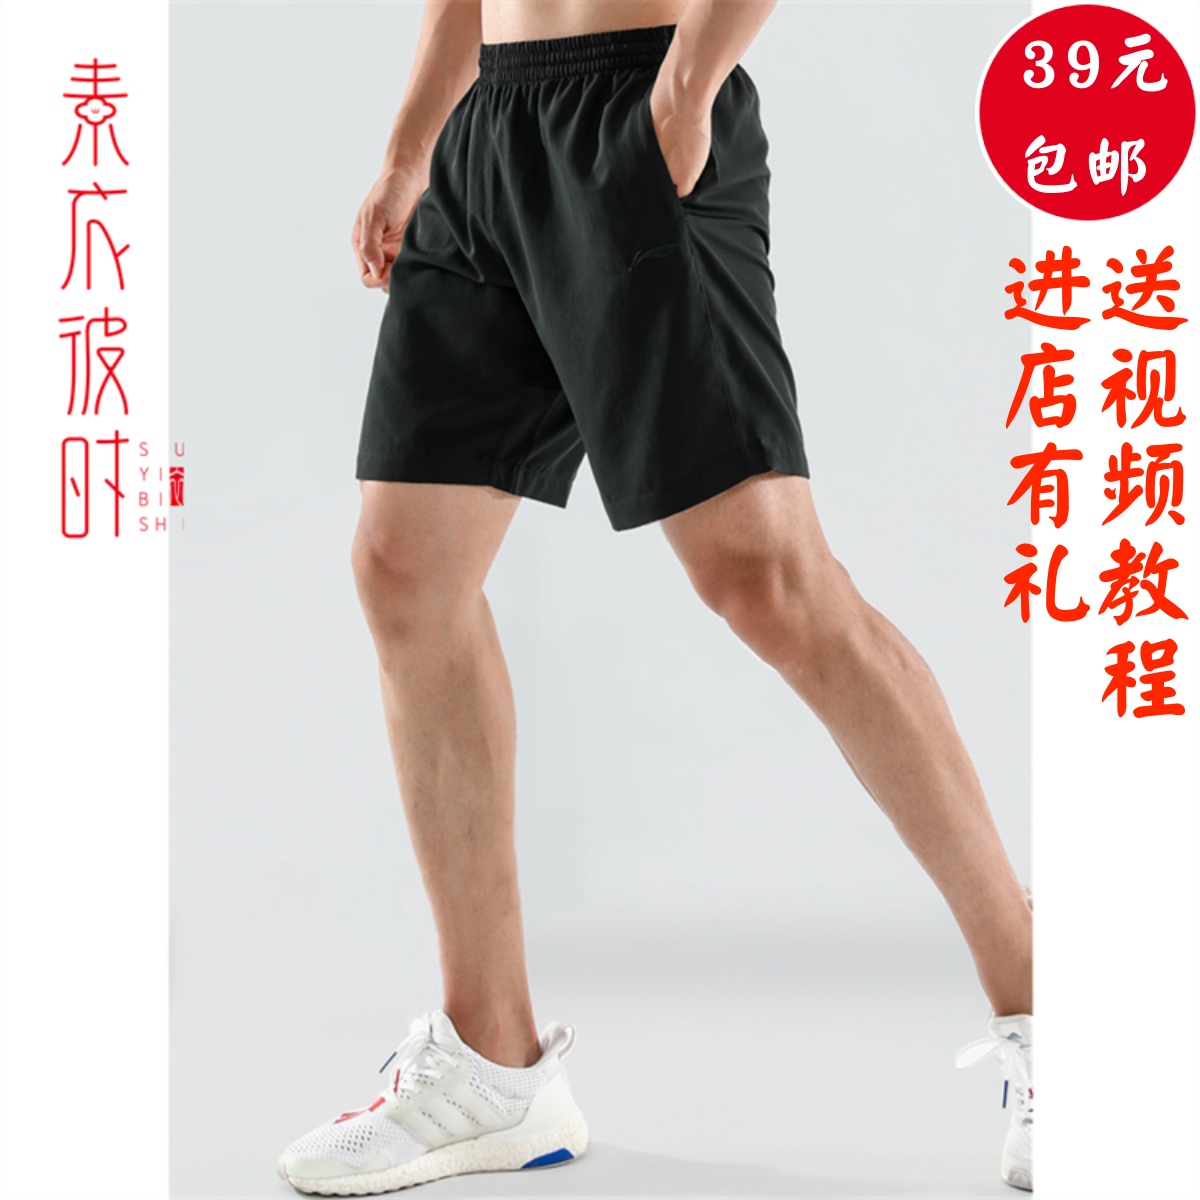 素衣彼时2013男跑步运动短裤服装裁剪图休闲五分裤手工diy纸样板